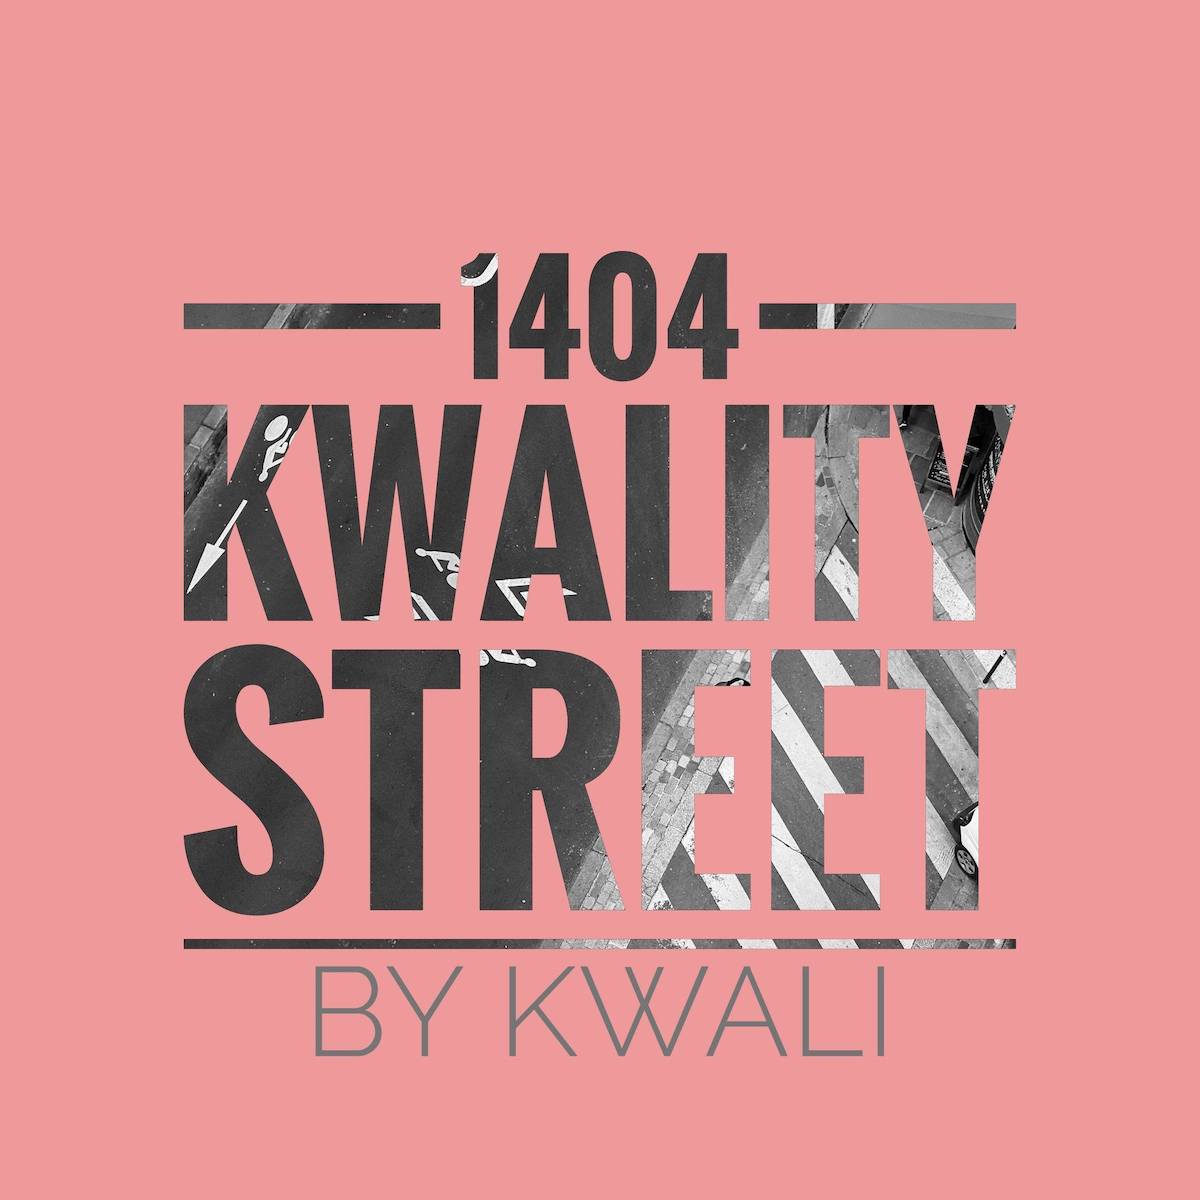 Lire la suite à propos de l’article Le producteur martiniquais Kwali dévoile son premier EP « 1404 Kwality Street » paru le 14 avril 2022